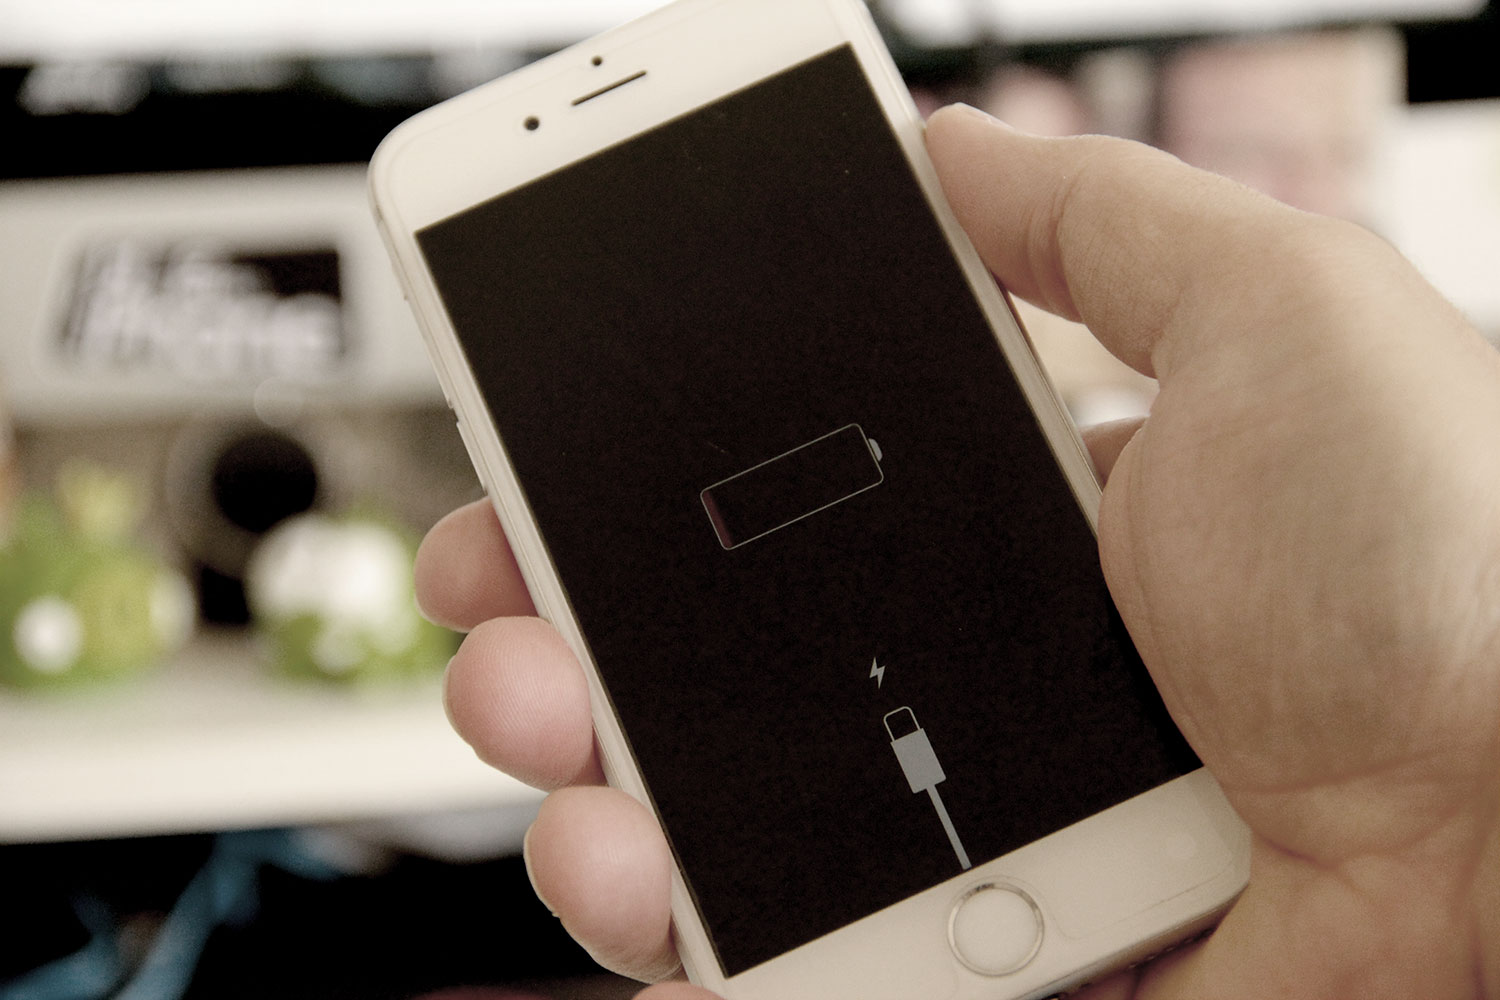 Bateria do iPhone fraca? Experimente essa dica incrível antes de trocar